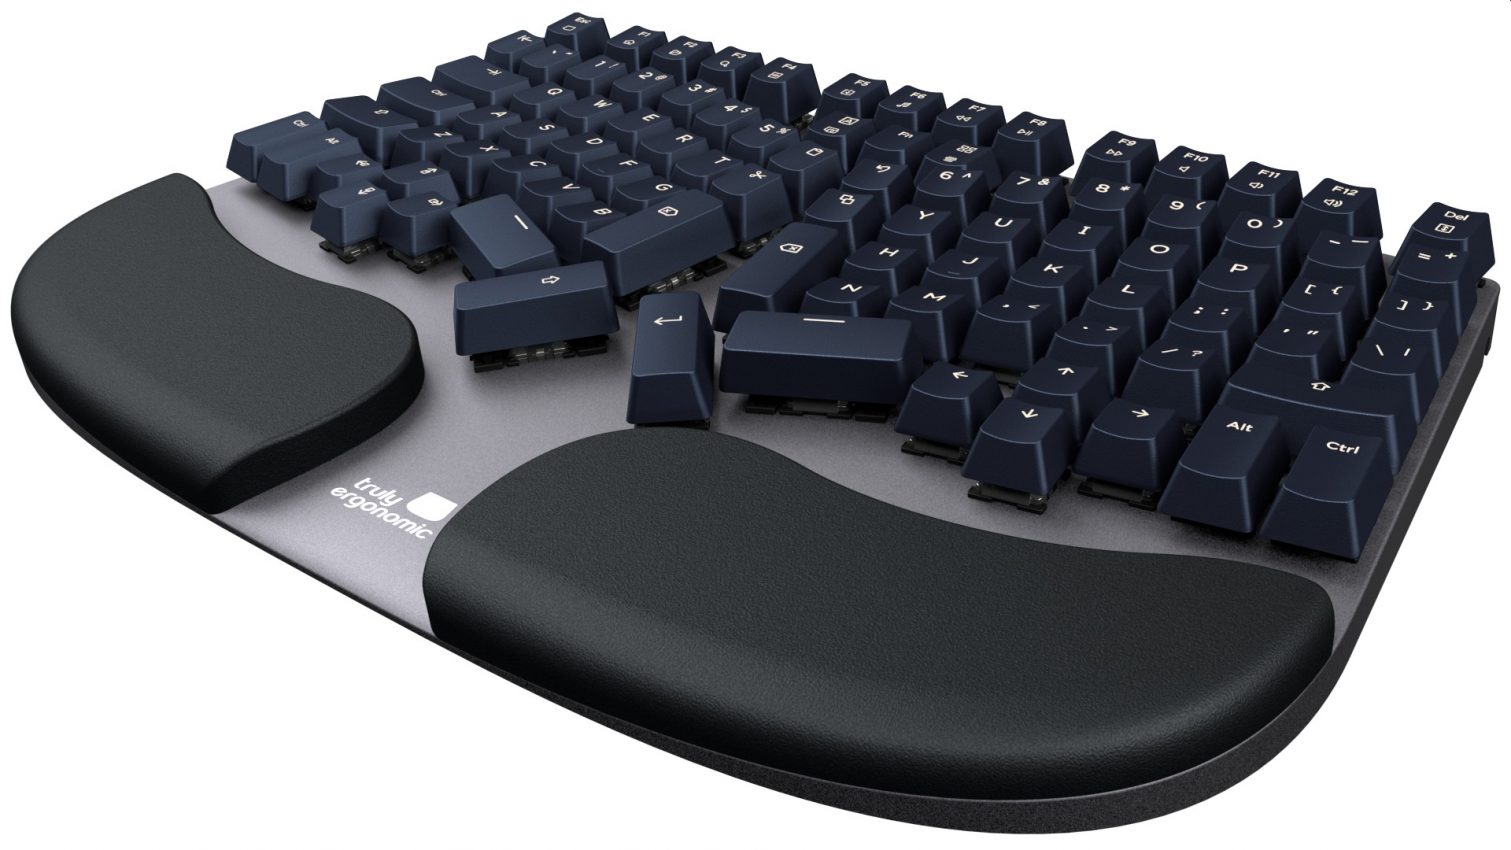 200以上 best ergonomic keyboard and mouse reddit 325602-Best ergonomic